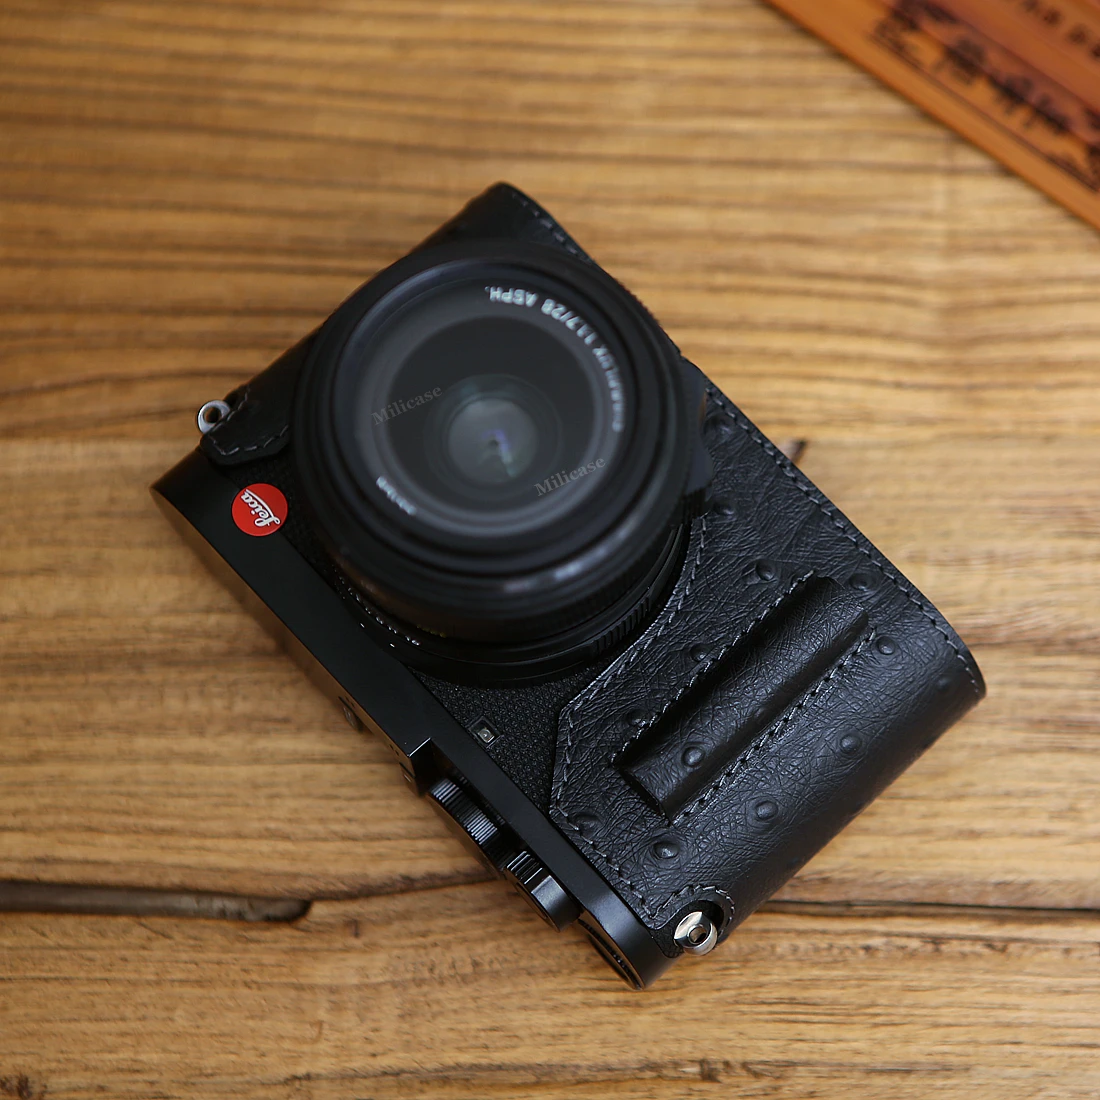 AYdgcam ручной работы из натуральной кожи чехол для камеры видео половина сумка упор для большого пальца Hos обуви для Leica Q2 Ретро винтажный нижний чехол